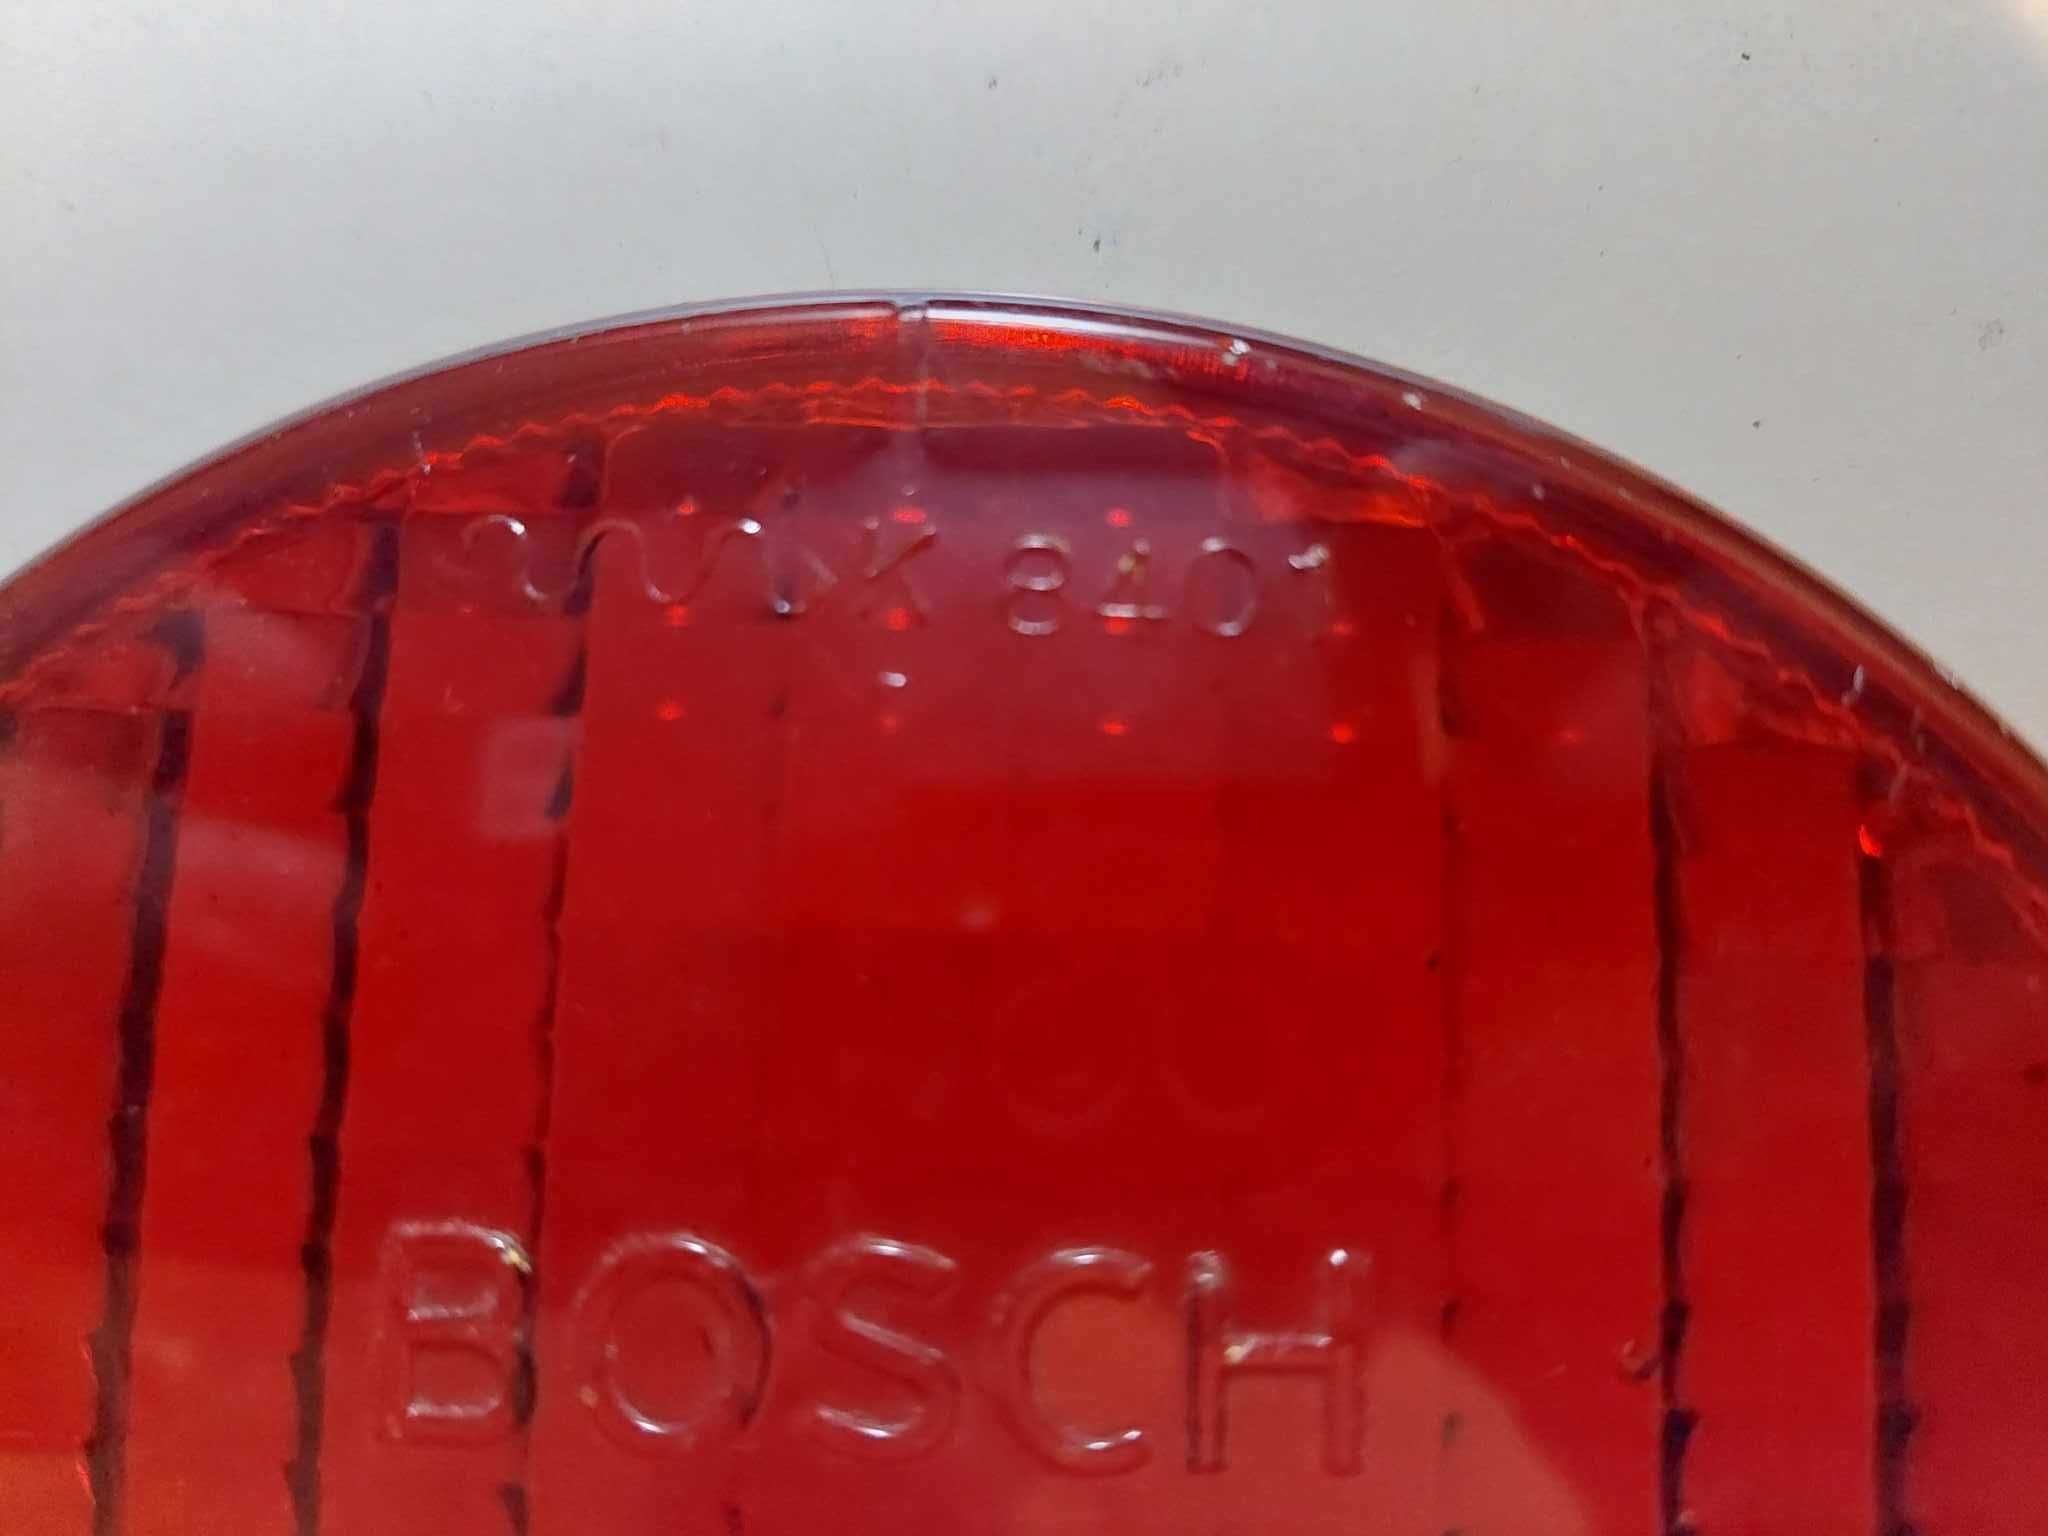 Szkło do lampy firmy Bosch czerwone.